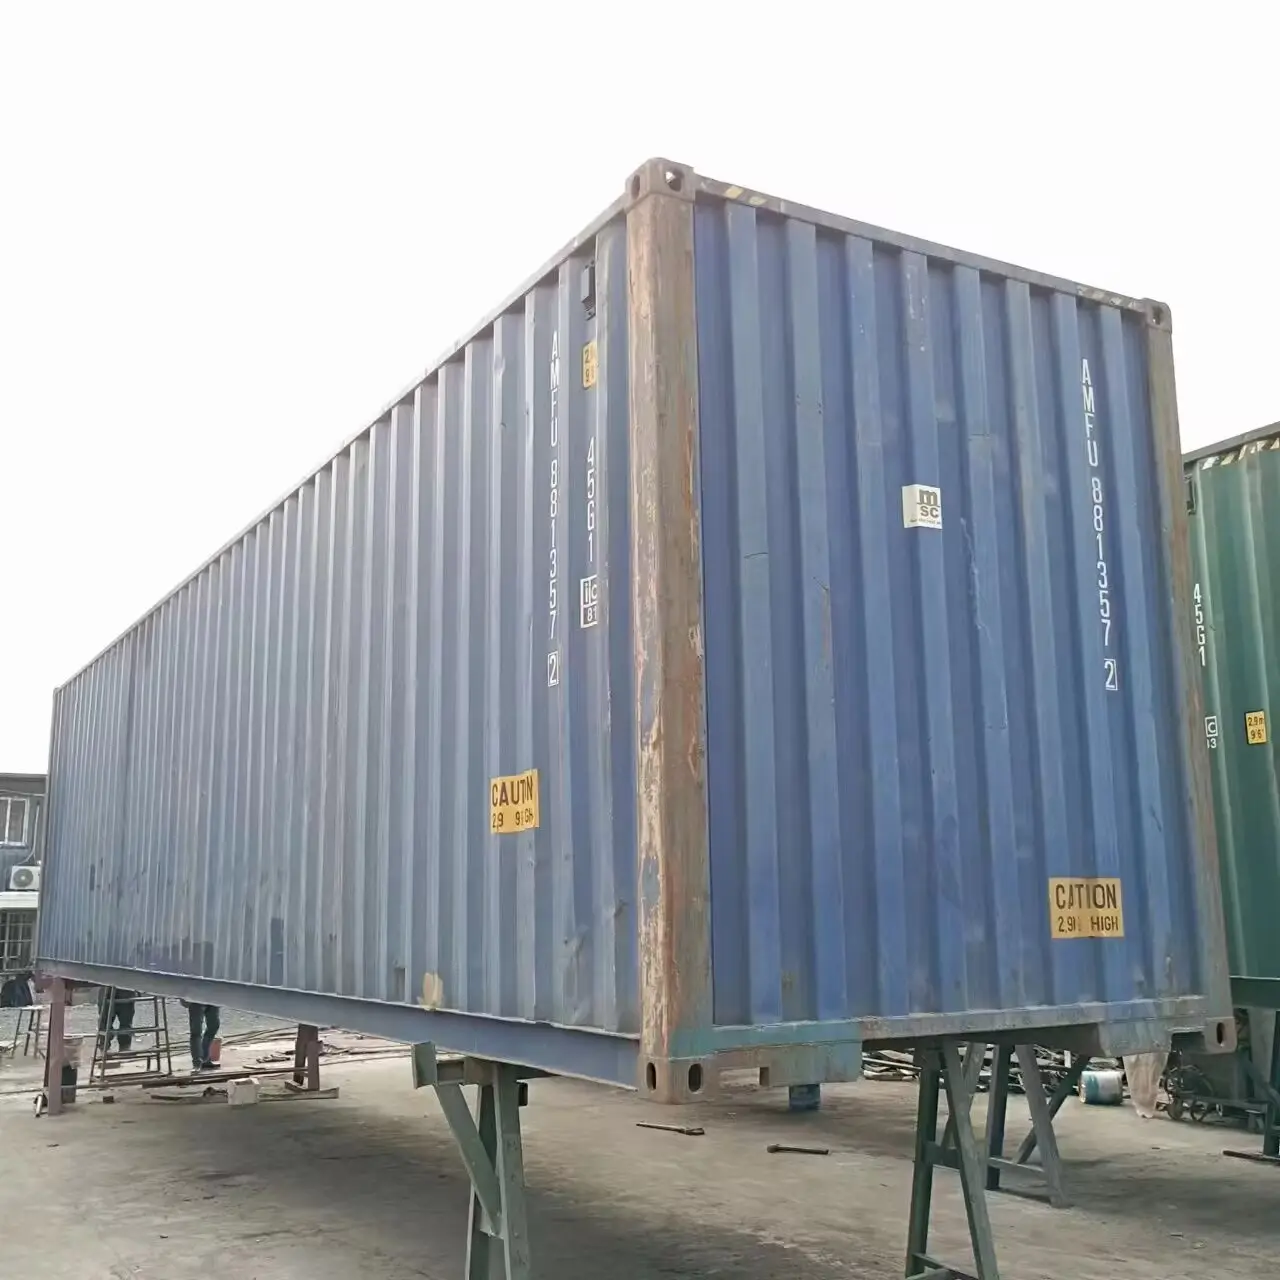 Guangzhou Tweede Hand Container Busje Gebruikte Container 40ft Voor Palestijnse